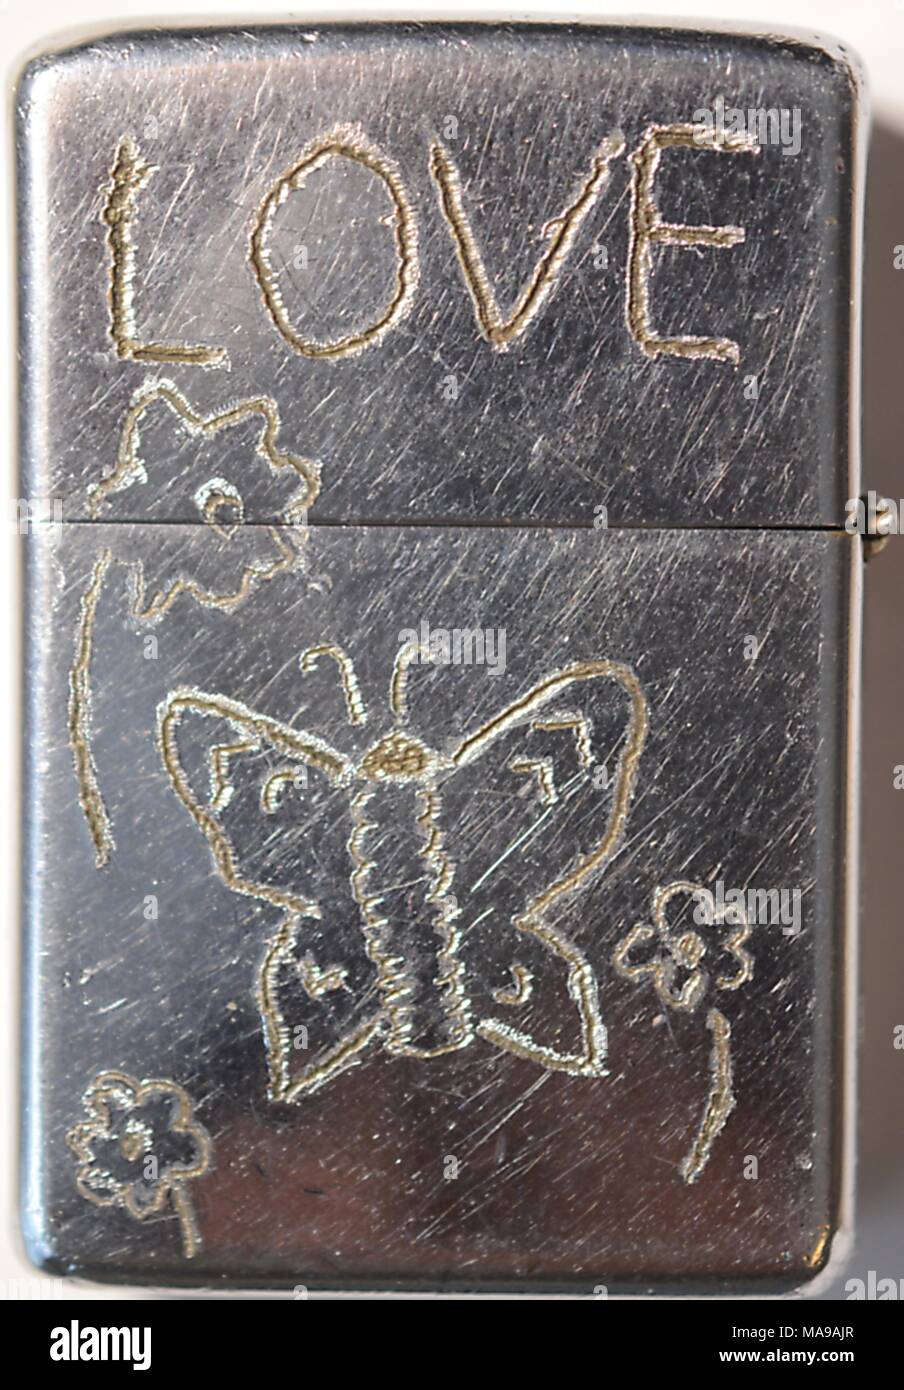 In der Nähe von Metall Zippo Feuerzeug, auf dem der Besitzer der Hand hat - gravierte hippie Symbolik, die das Wort Liebe und ein Schmetterling und Blumen Motiv, während des Vietnamkriegs, 1968. () Stockfoto